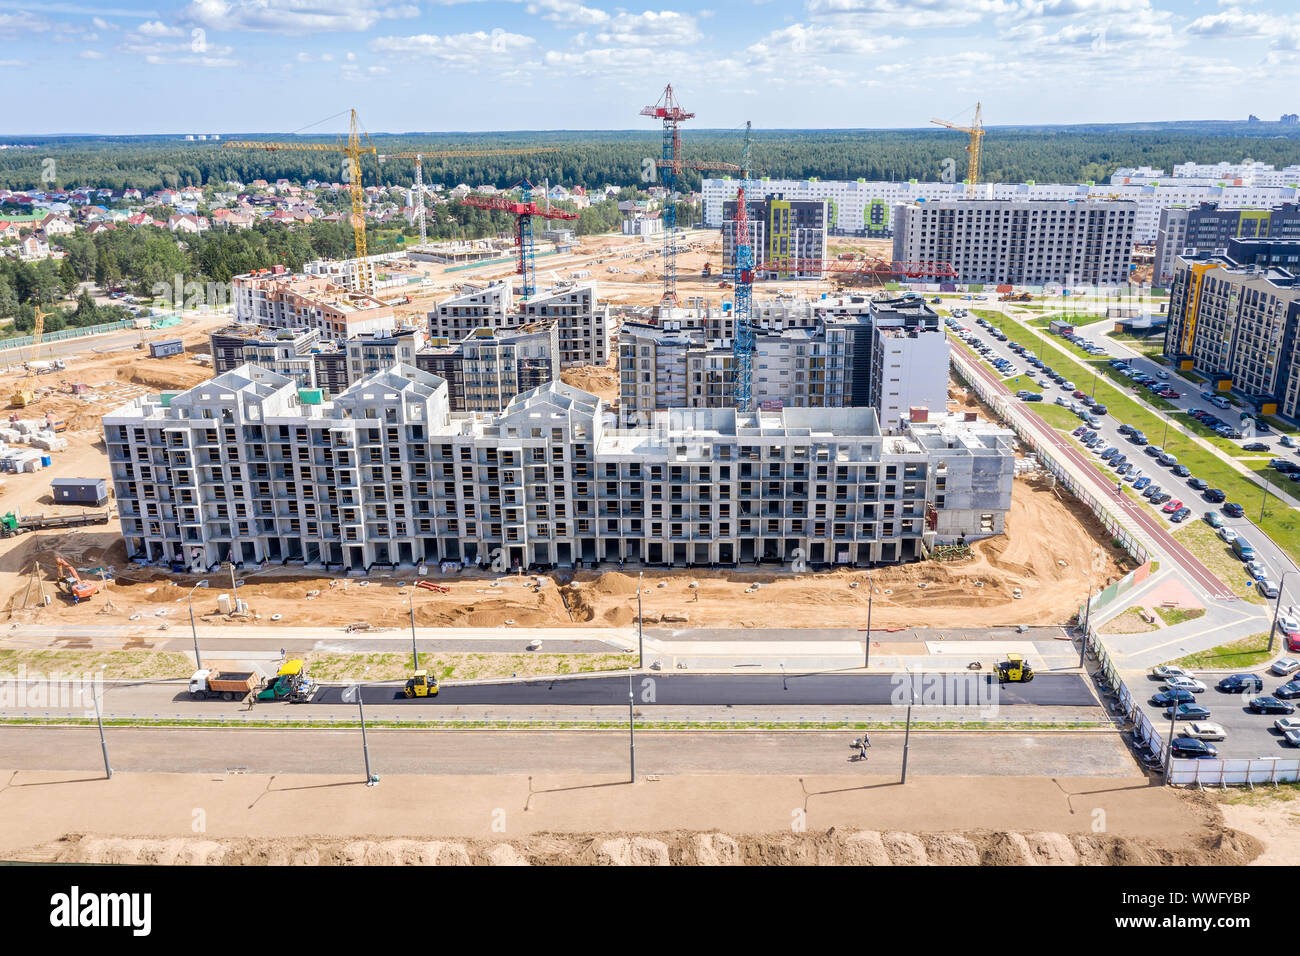 Costruzione di un nuovo quartiere residenziale. immagine aerea della città sito in costruzione Foto Stock